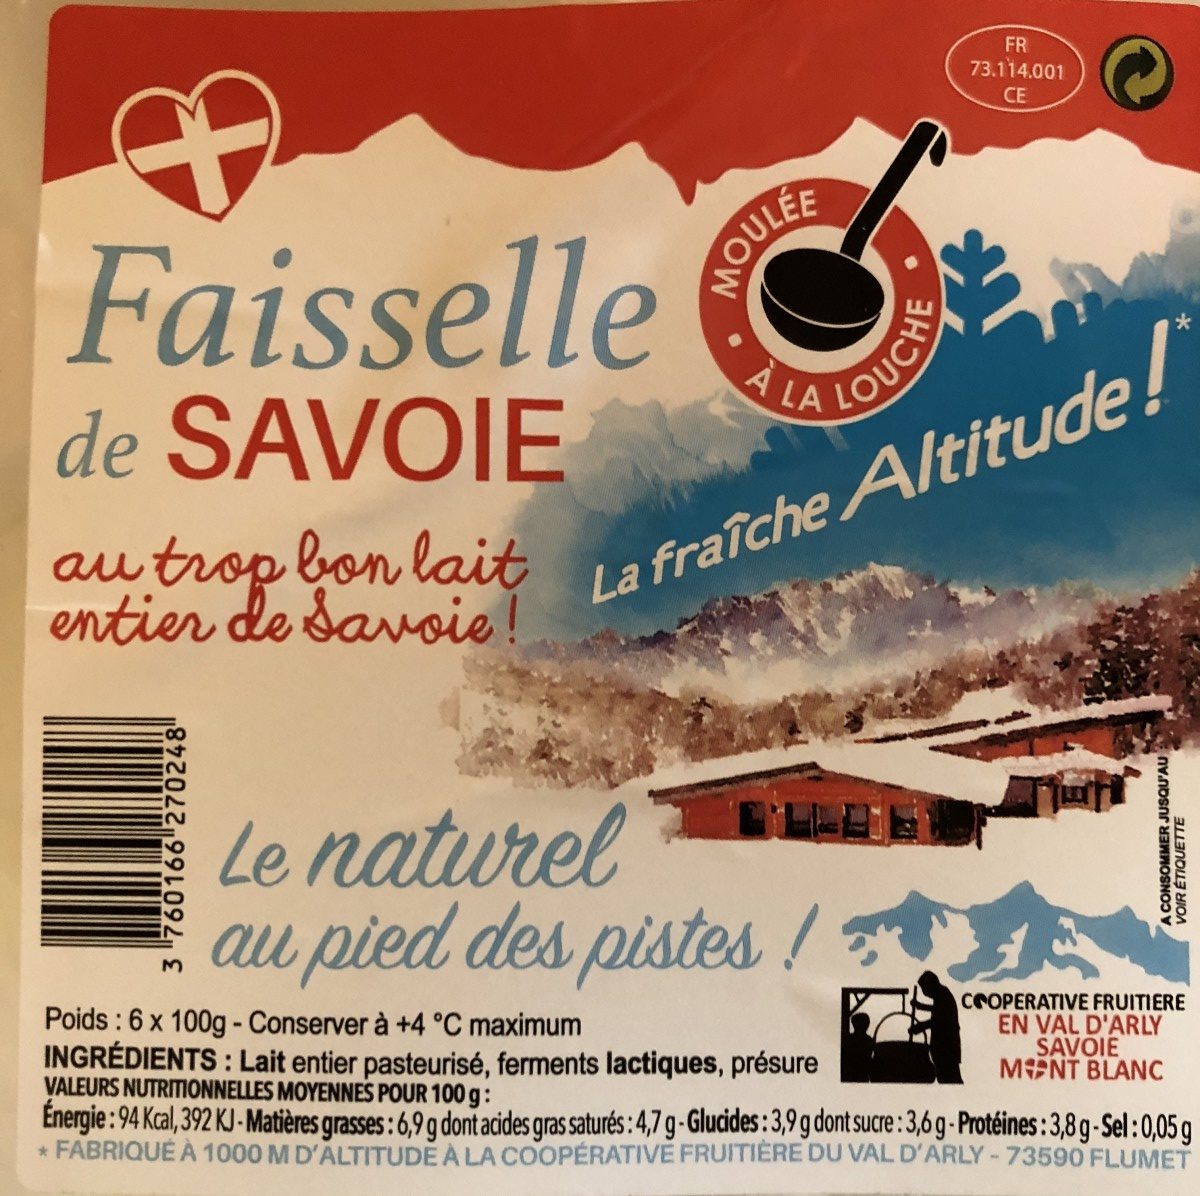 Faisselle de savoie - 成分 - fr